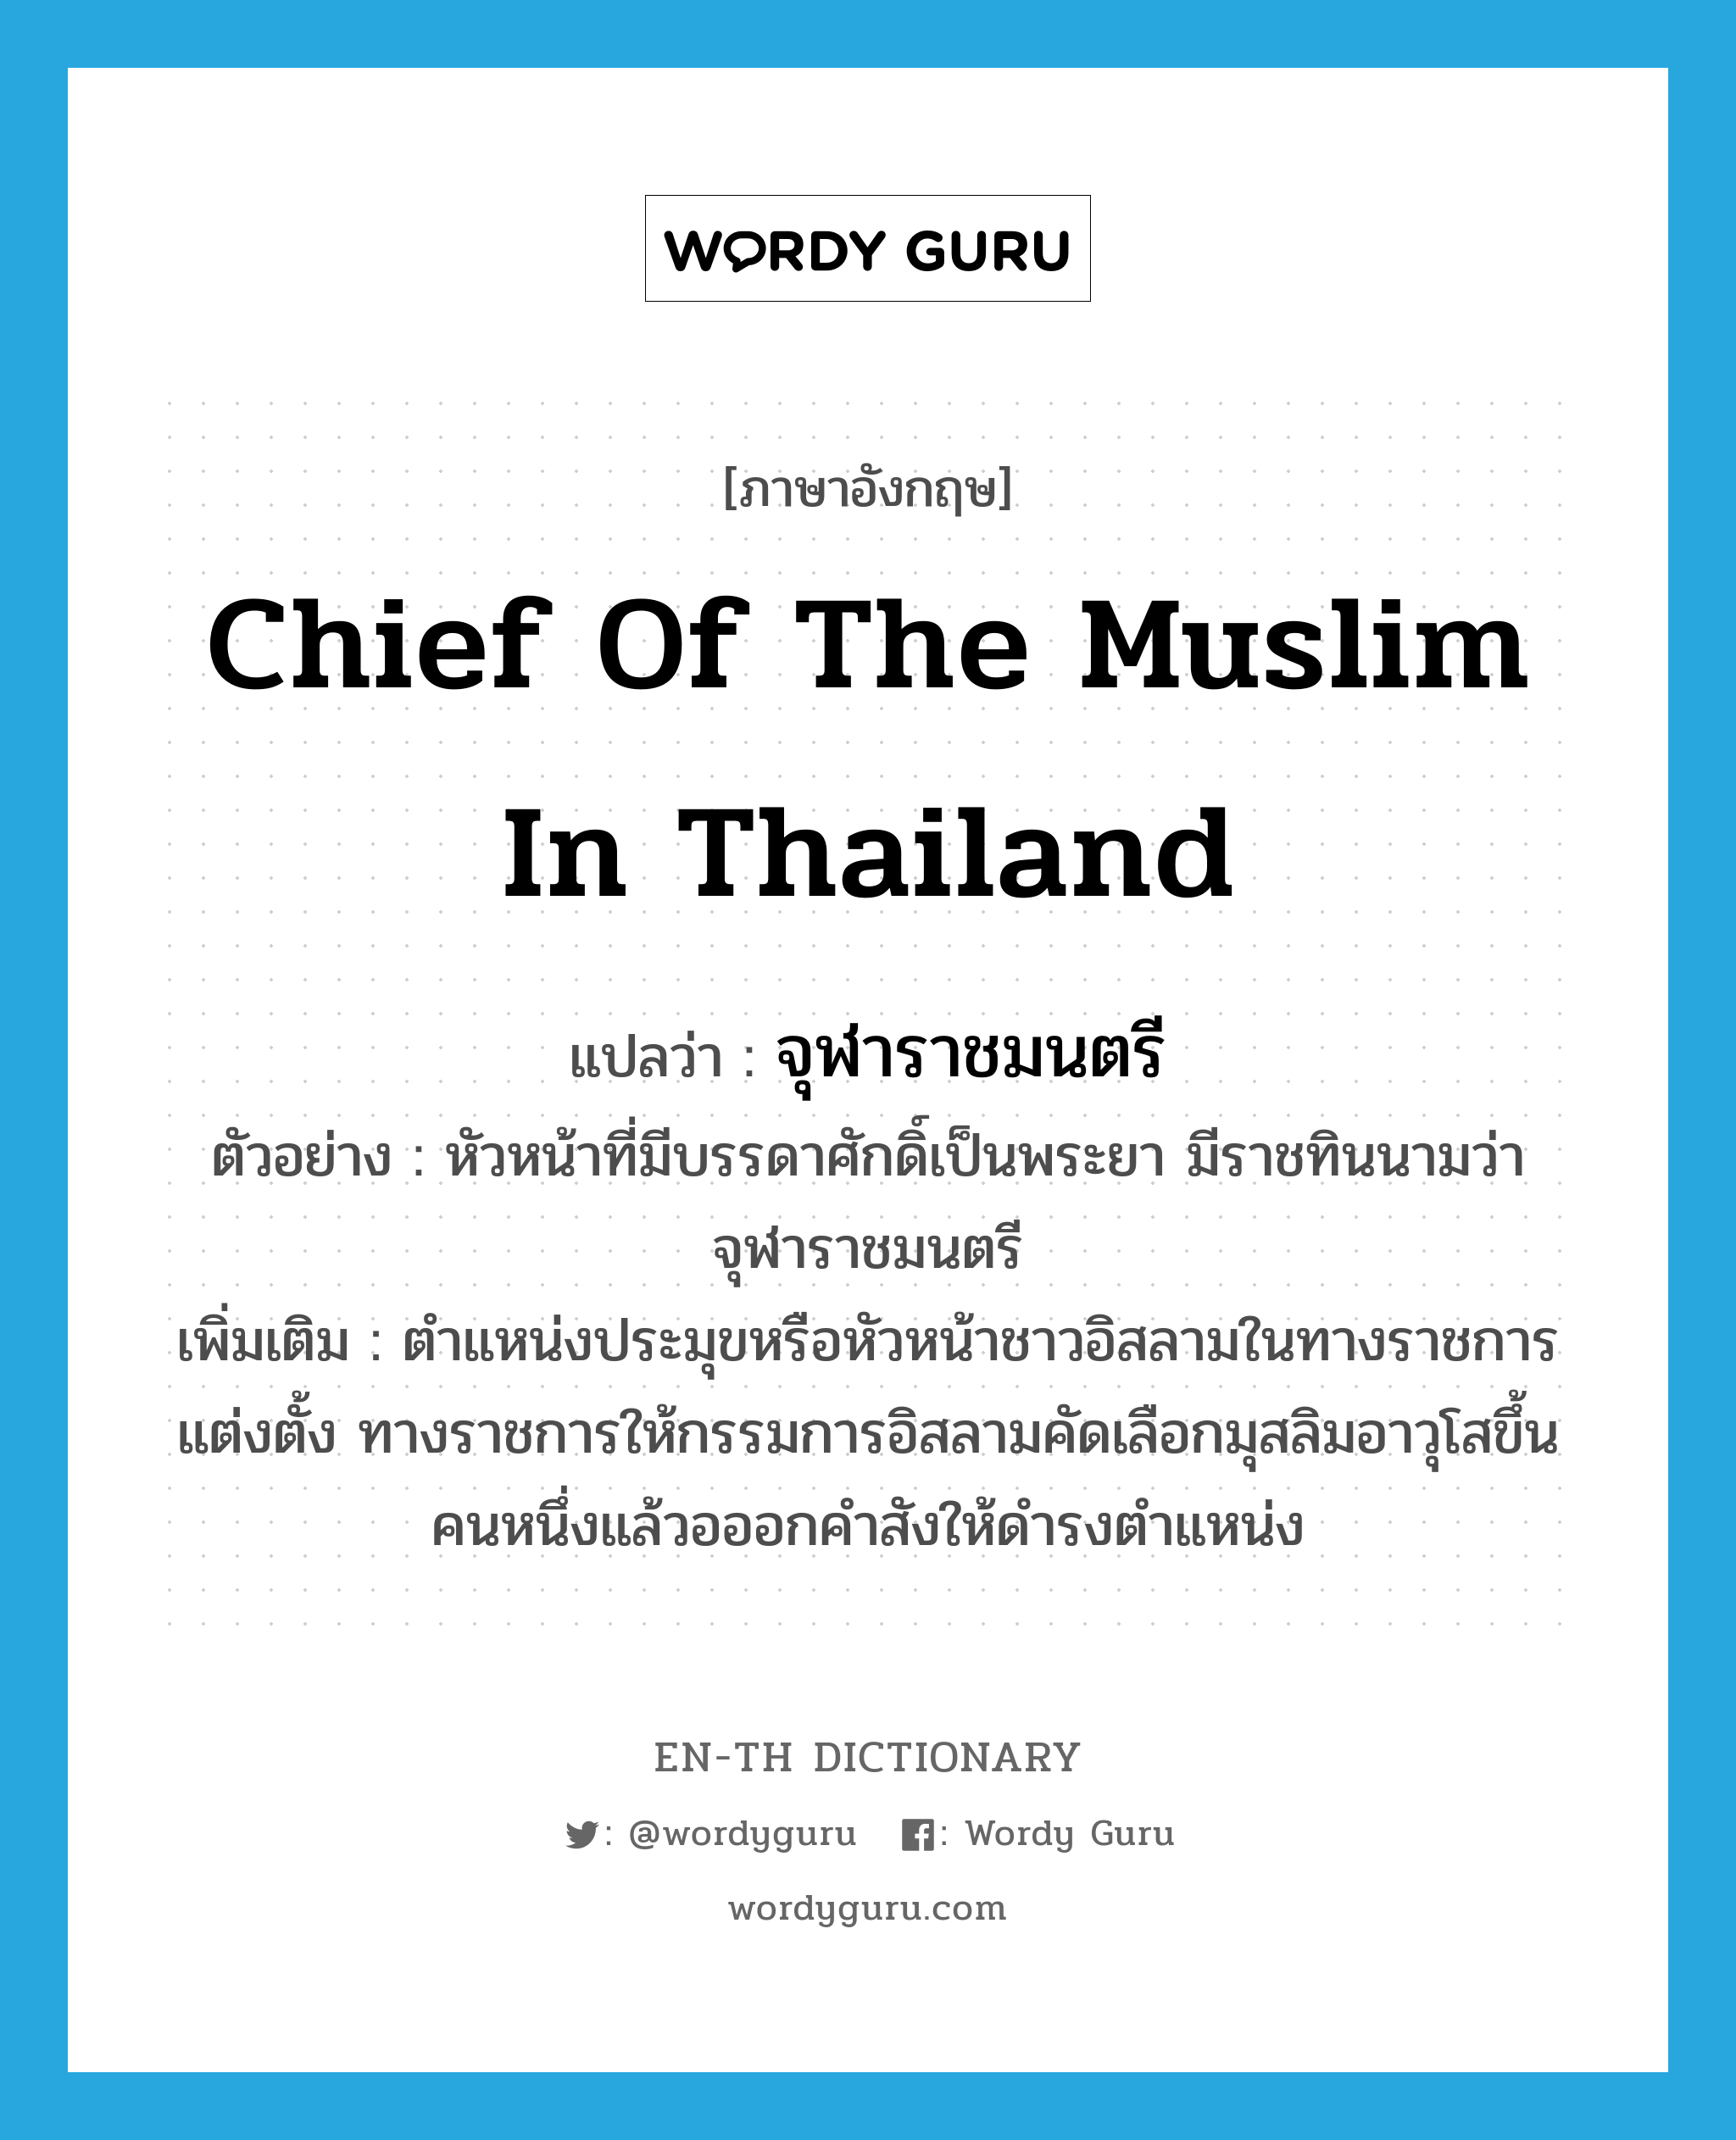 chief of the Muslim in Thailand แปลว่า?, คำศัพท์ภาษาอังกฤษ chief of the Muslim in Thailand แปลว่า จุฬาราชมนตรี ประเภท N ตัวอย่าง หัวหน้าที่มีบรรดาศักดิ์เป็นพระยา มีราชทินนามว่าจุฬาราชมนตรี เพิ่มเติม ตำแหน่งประมุขหรือหัวหน้าชาวอิสลามในทางราชการแต่งตั้ง ทางราชการให้กรรมการอิสลามคัดเลือกมุสลิมอาวุโสขึ้นคนหนึ่งแล้วอออกคำสังให้ดำรงตำแหน่ง หมวด N